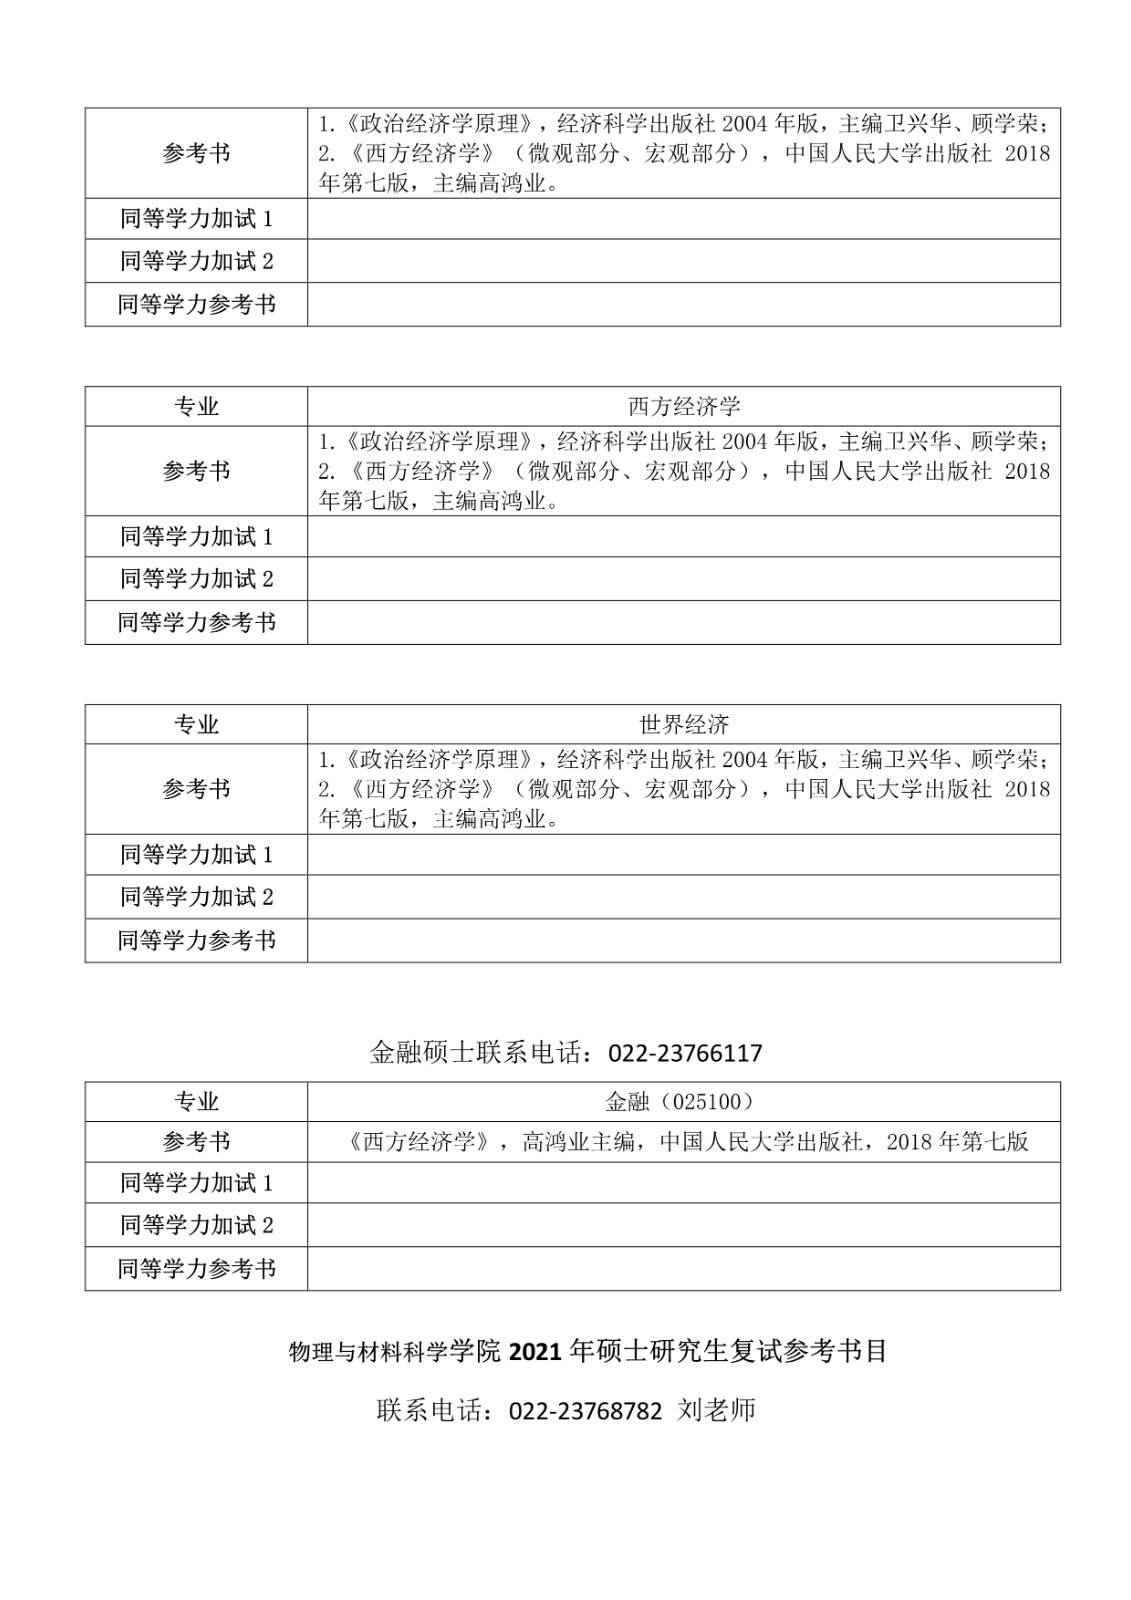 2021年天津师范大学硕士研究生入学考试各学院（部）复试参考书目